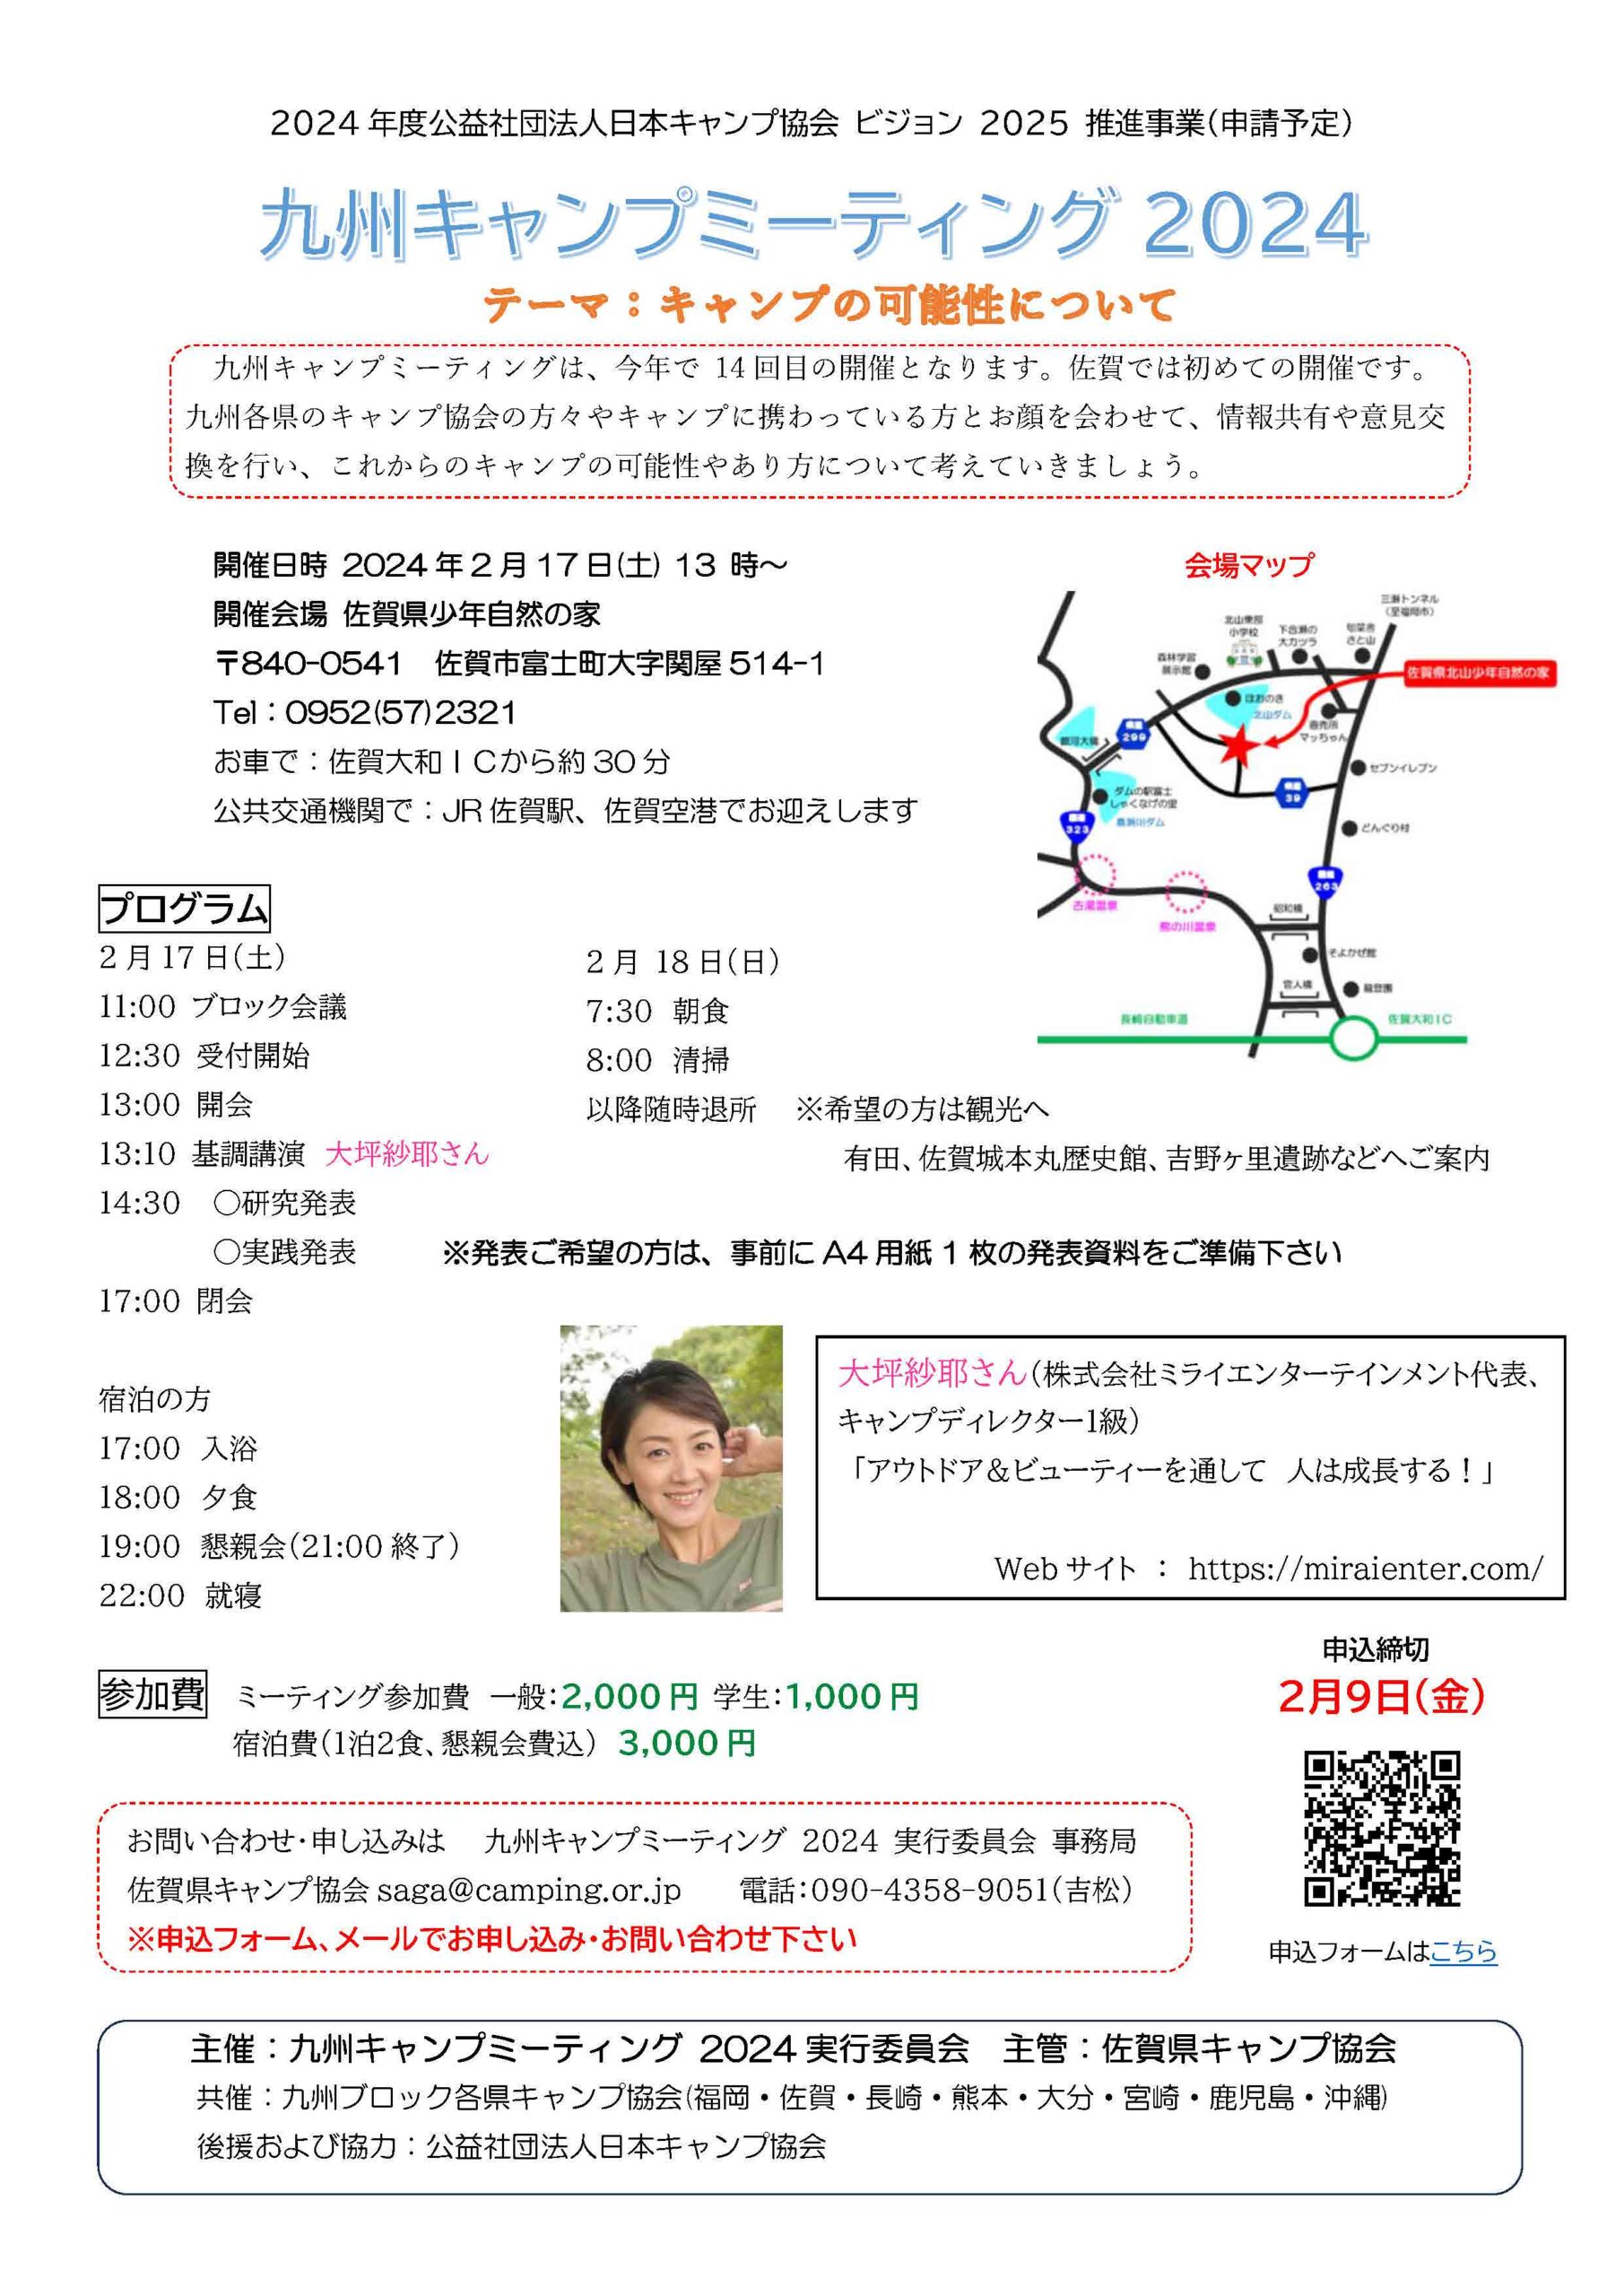 佐賀：九州キャンプミーティング2024 @ 佐賀県北山少年自然の家